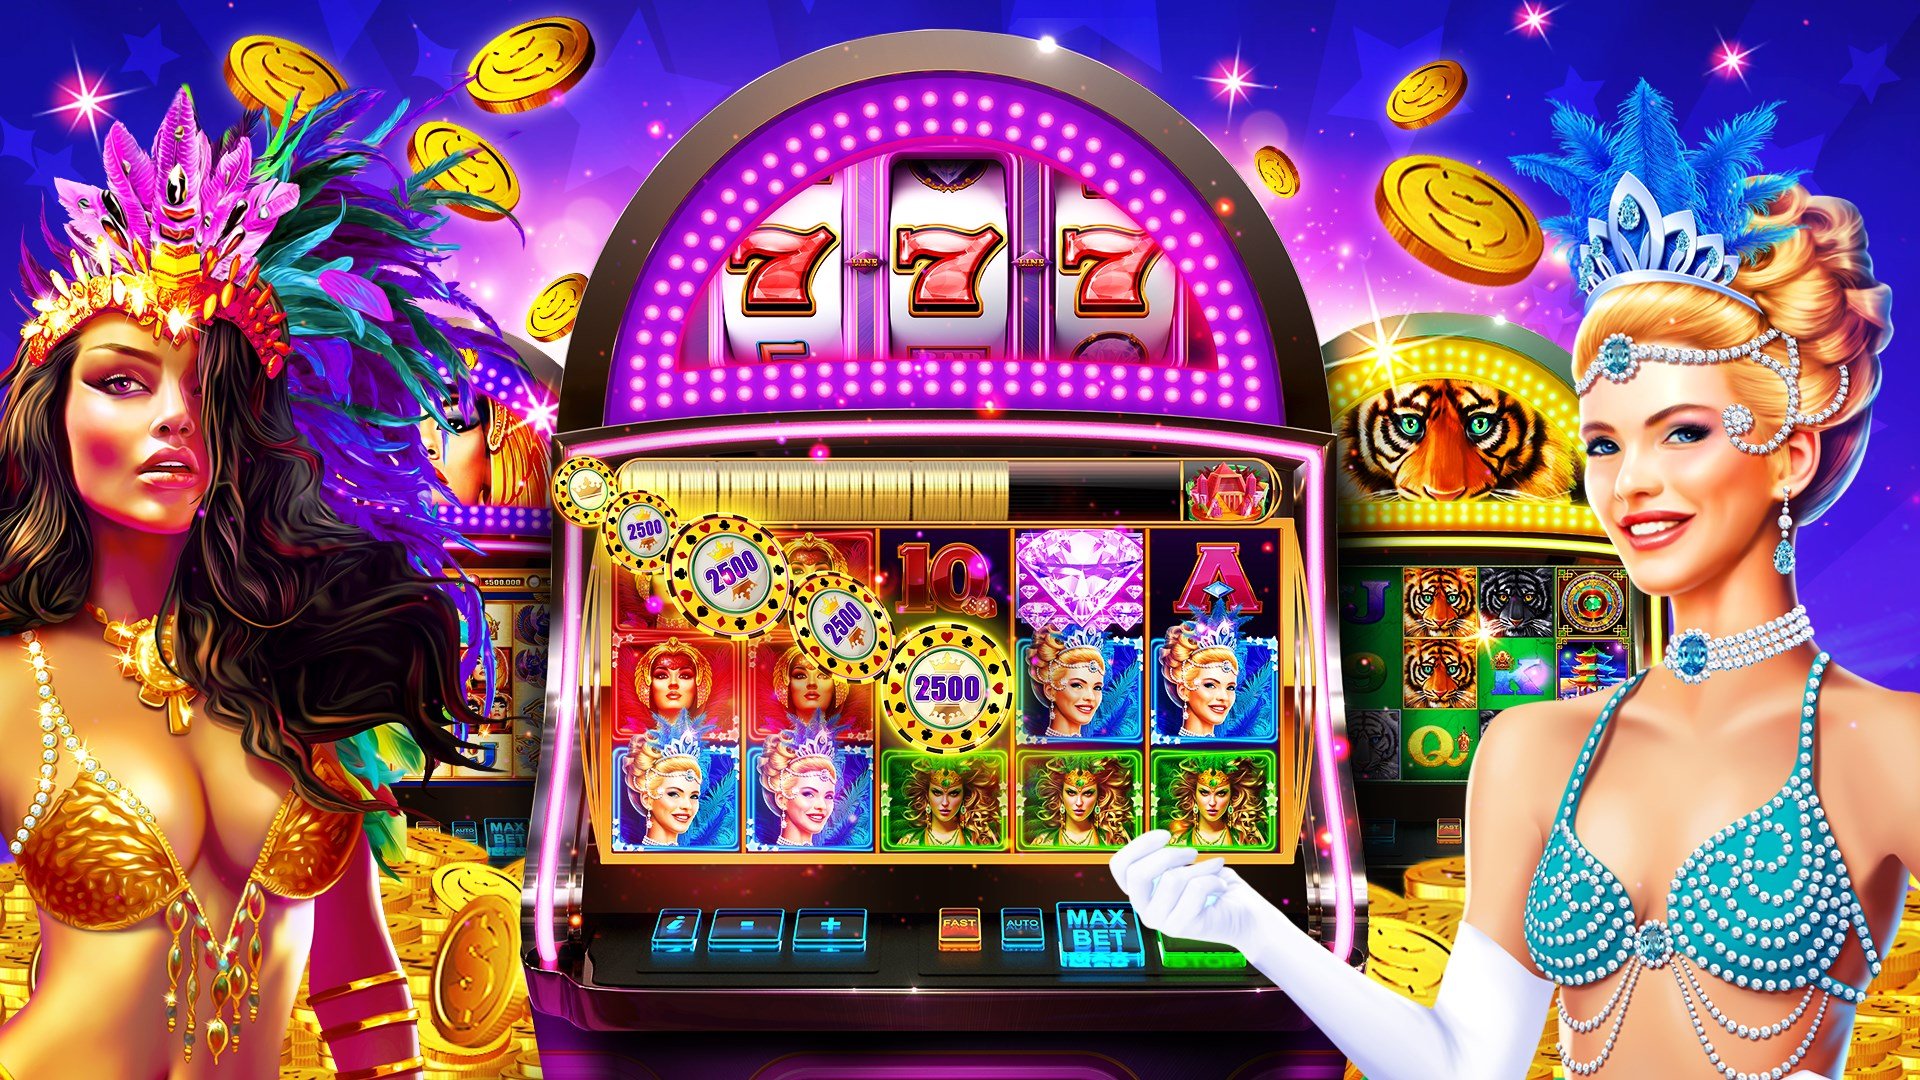 Игровые автоматы онлайн клуб казино играть войти в вулкан игровые автоматы